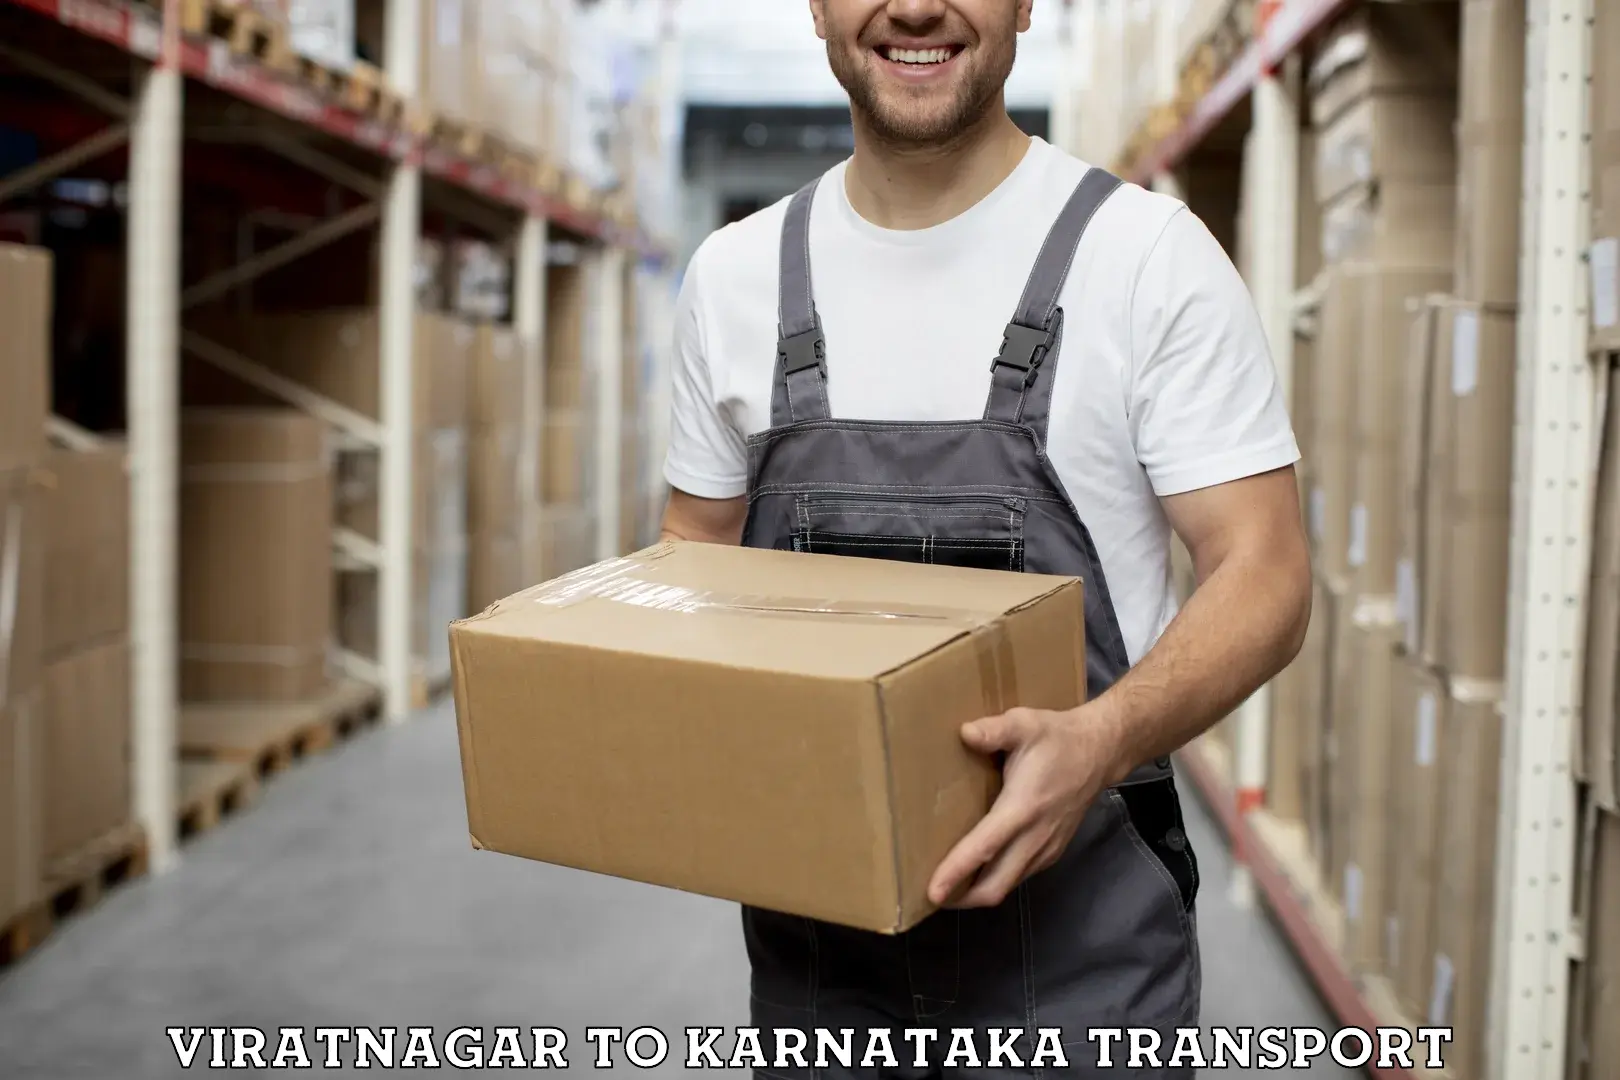 Online transport service Viratnagar to Ranebennur